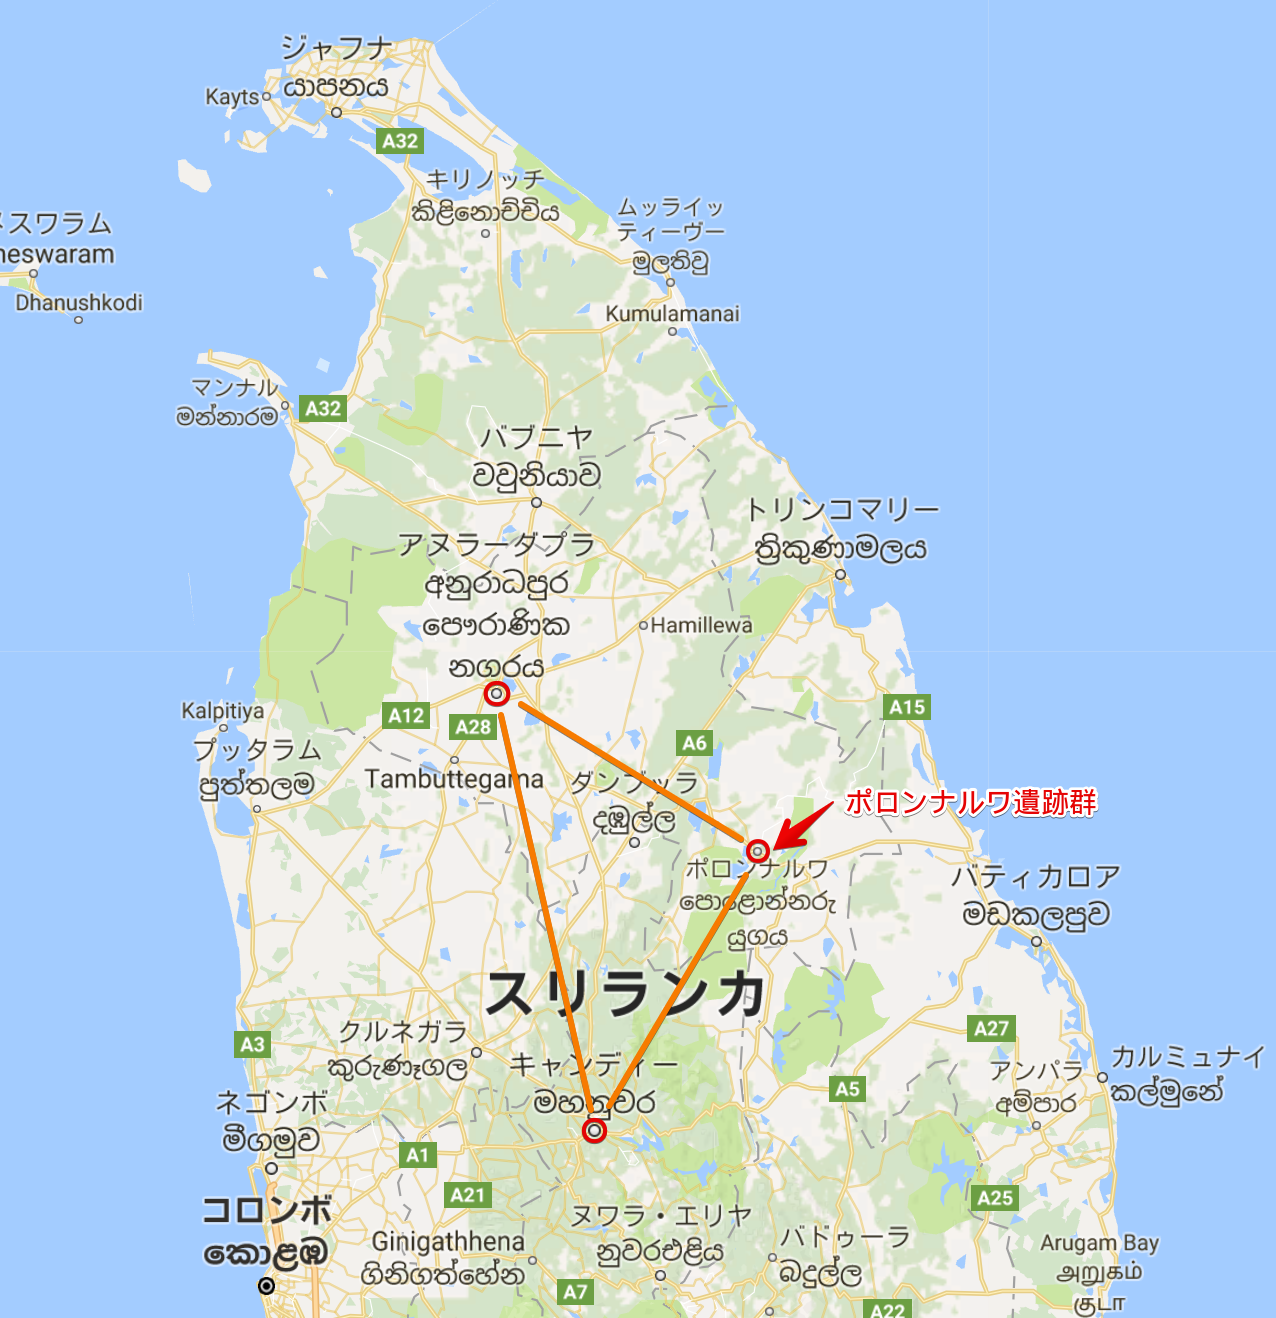 スリランカ 世界遺産ポロンナルワ遺跡の効率的な回り方 絶対に見ておくべきポイントを簡単な地図におとしてご紹介します あじあ